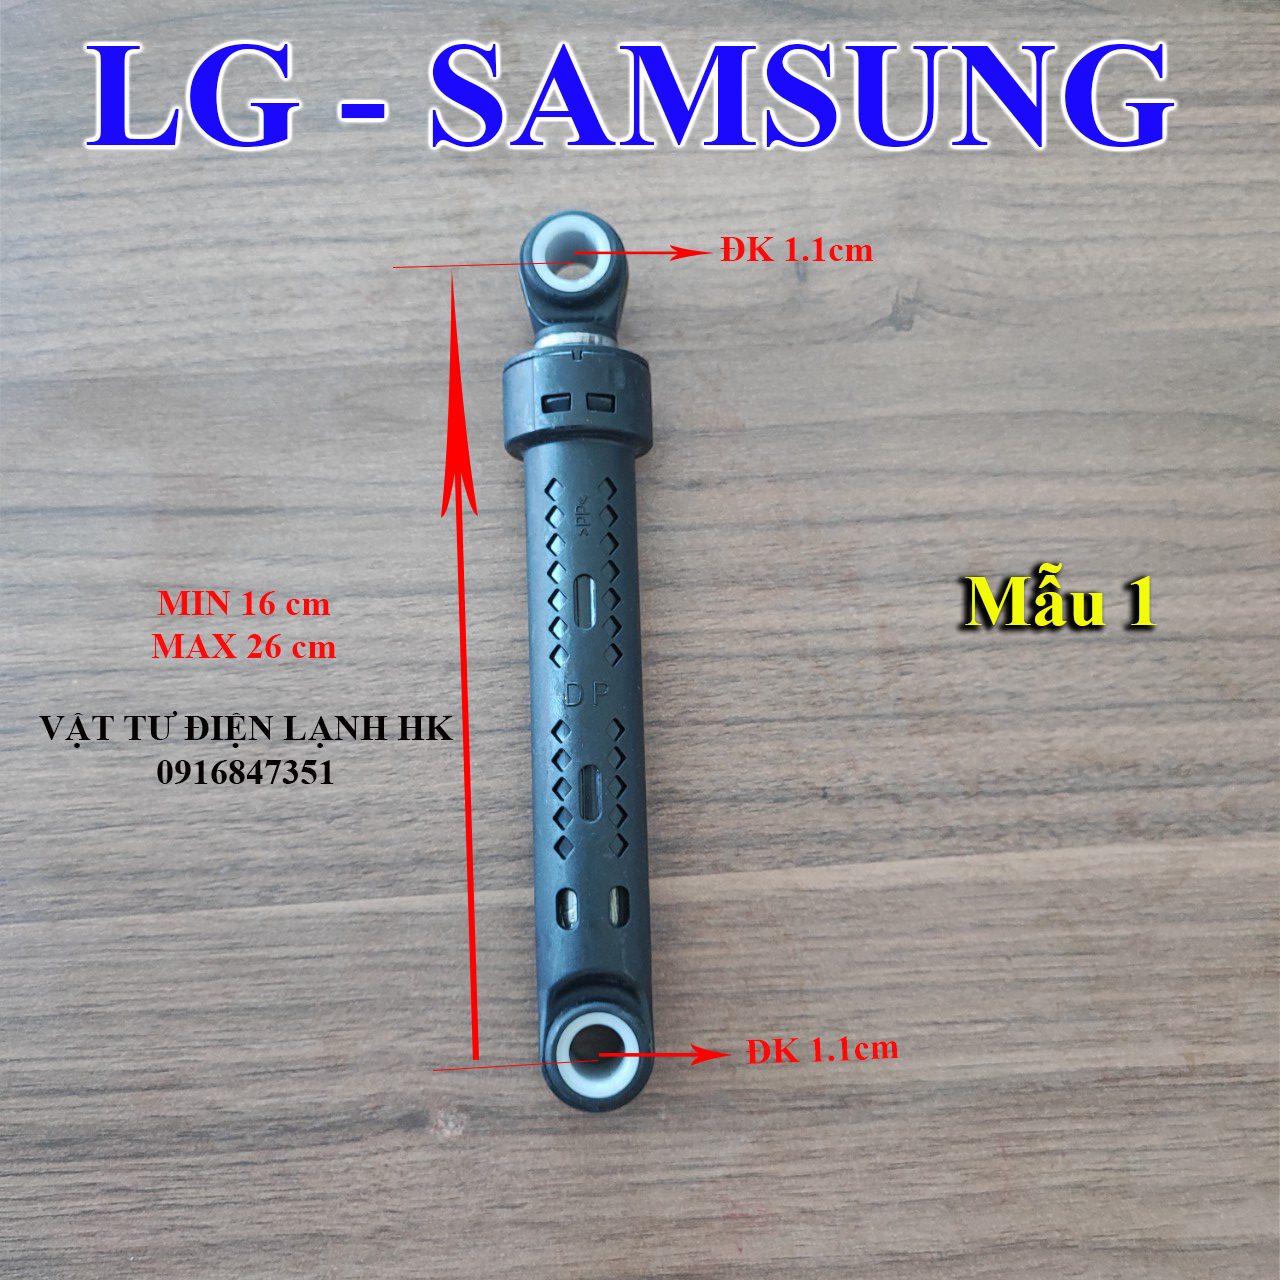 Tay nhún thụt giảm xóc dùng cho máy giặt LG Samsung - Chân chống rung sóc mg sámung Mẫu 1